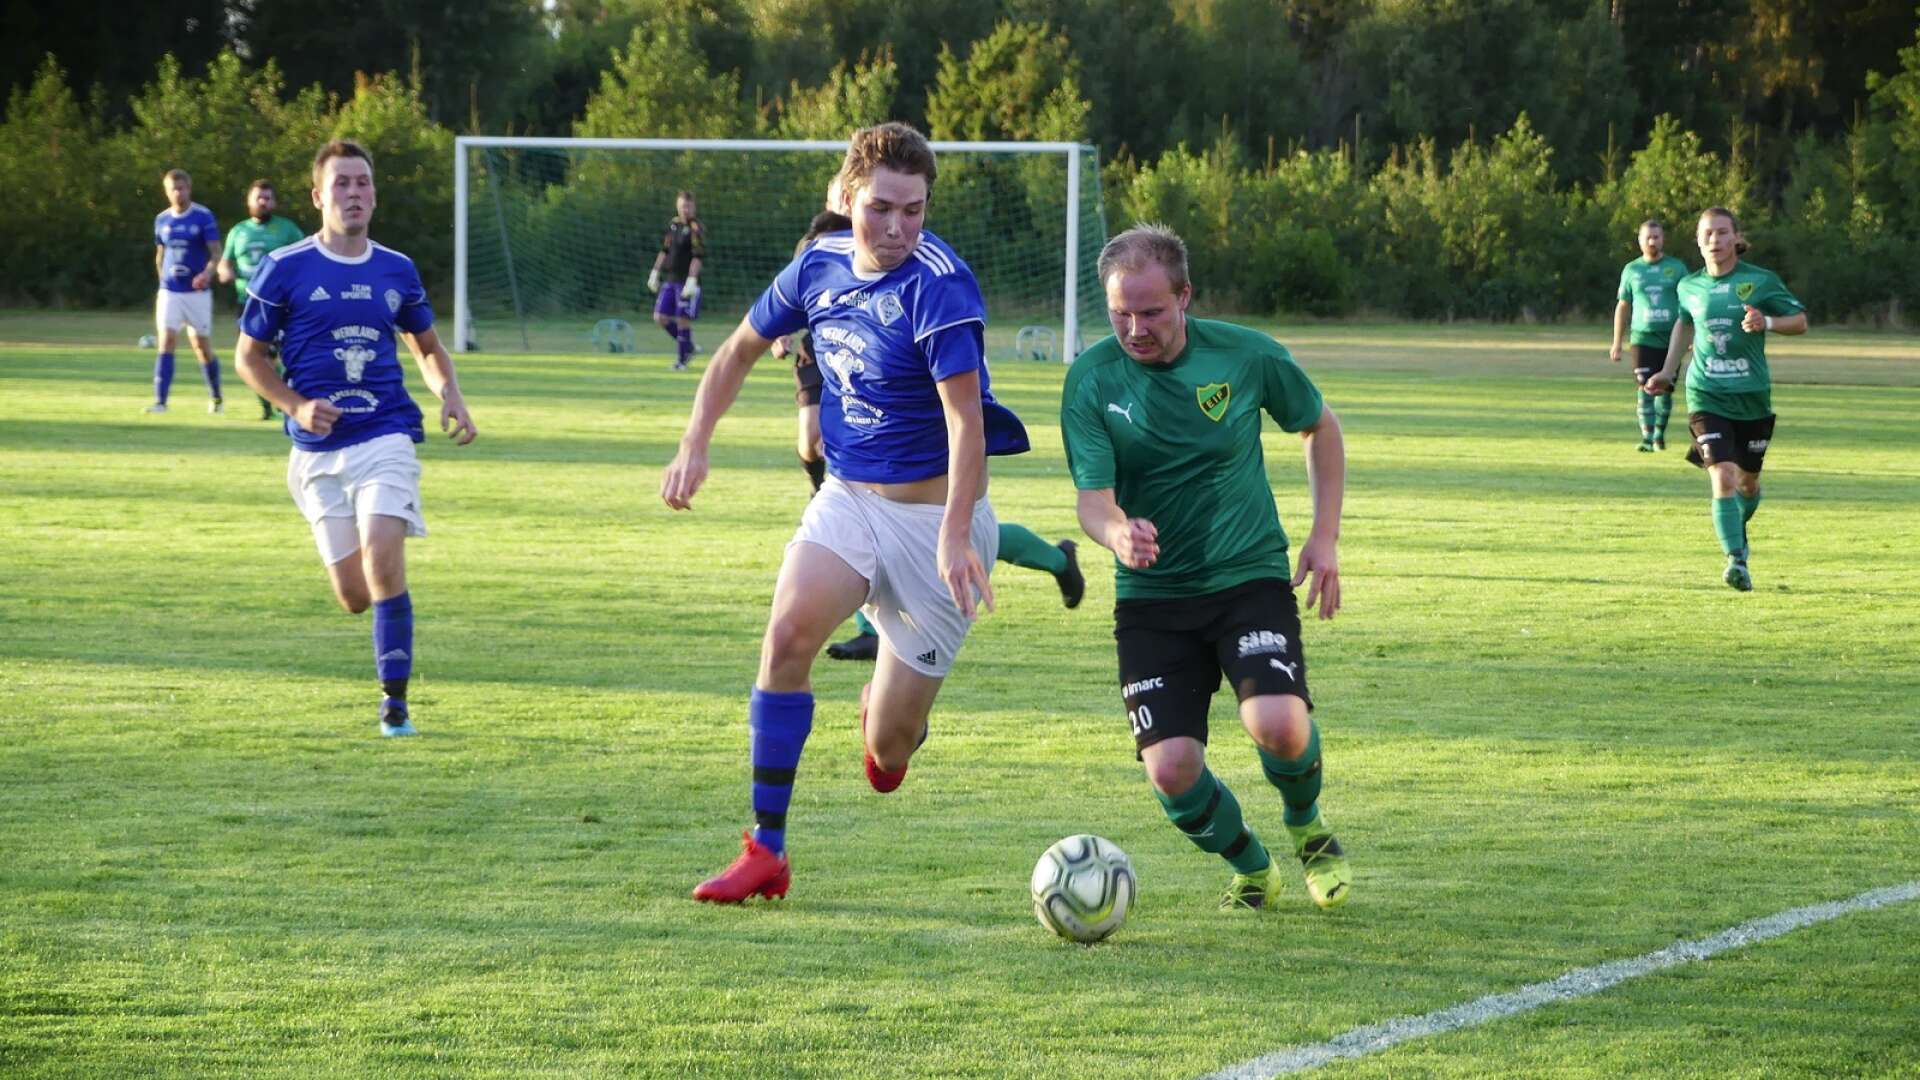 Ett fredagsderby på Rudsvallen spelades i division 6 - Eskilsäter mot Gillberga. Hemmalaget var de som slutligen stod segrande i kampen efter 2-1.